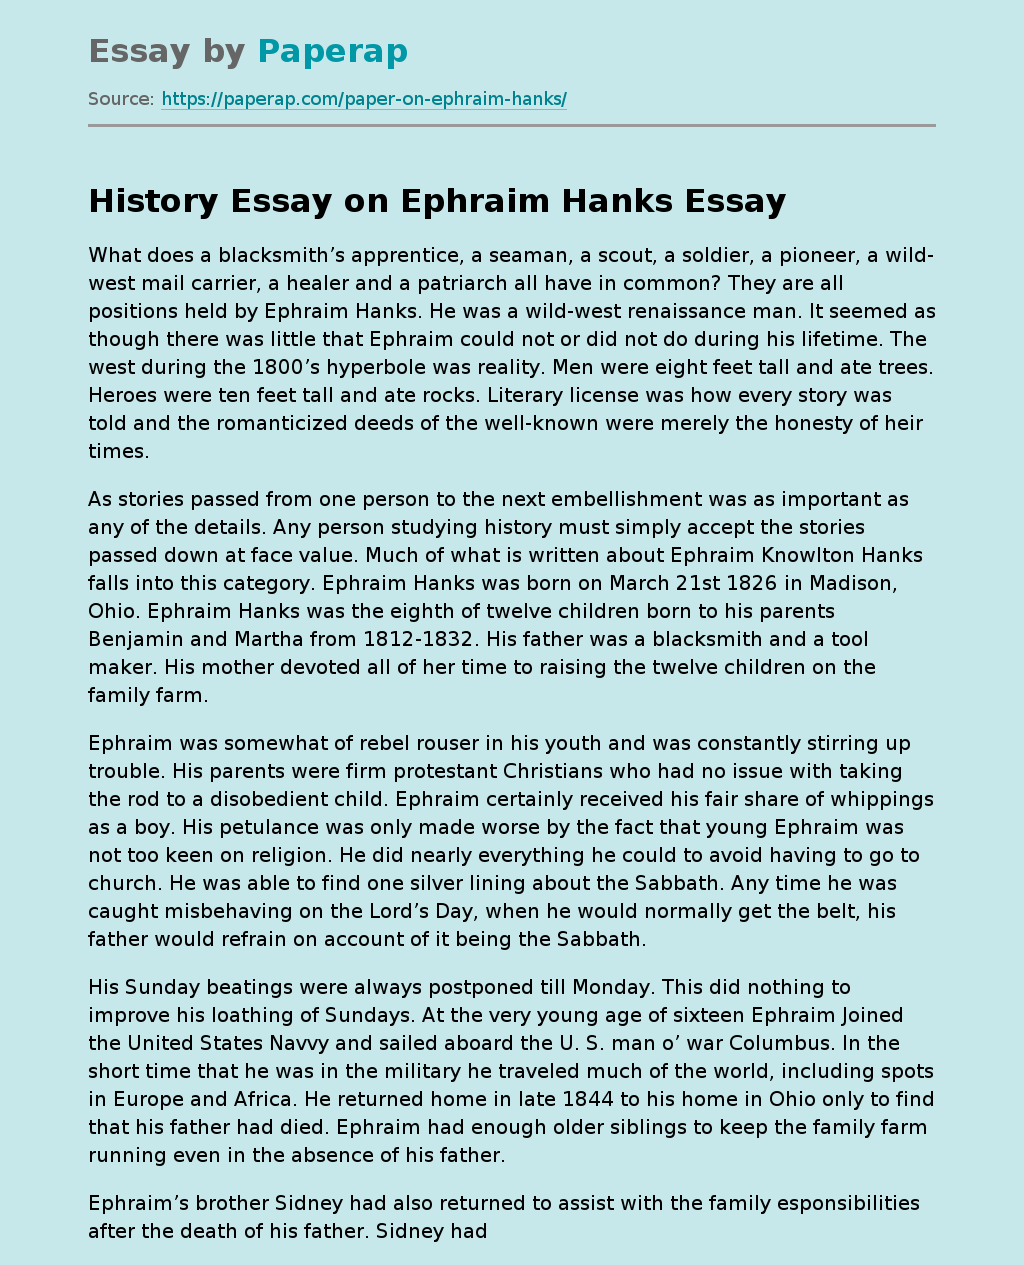 History Essay on Ephraim Hanks